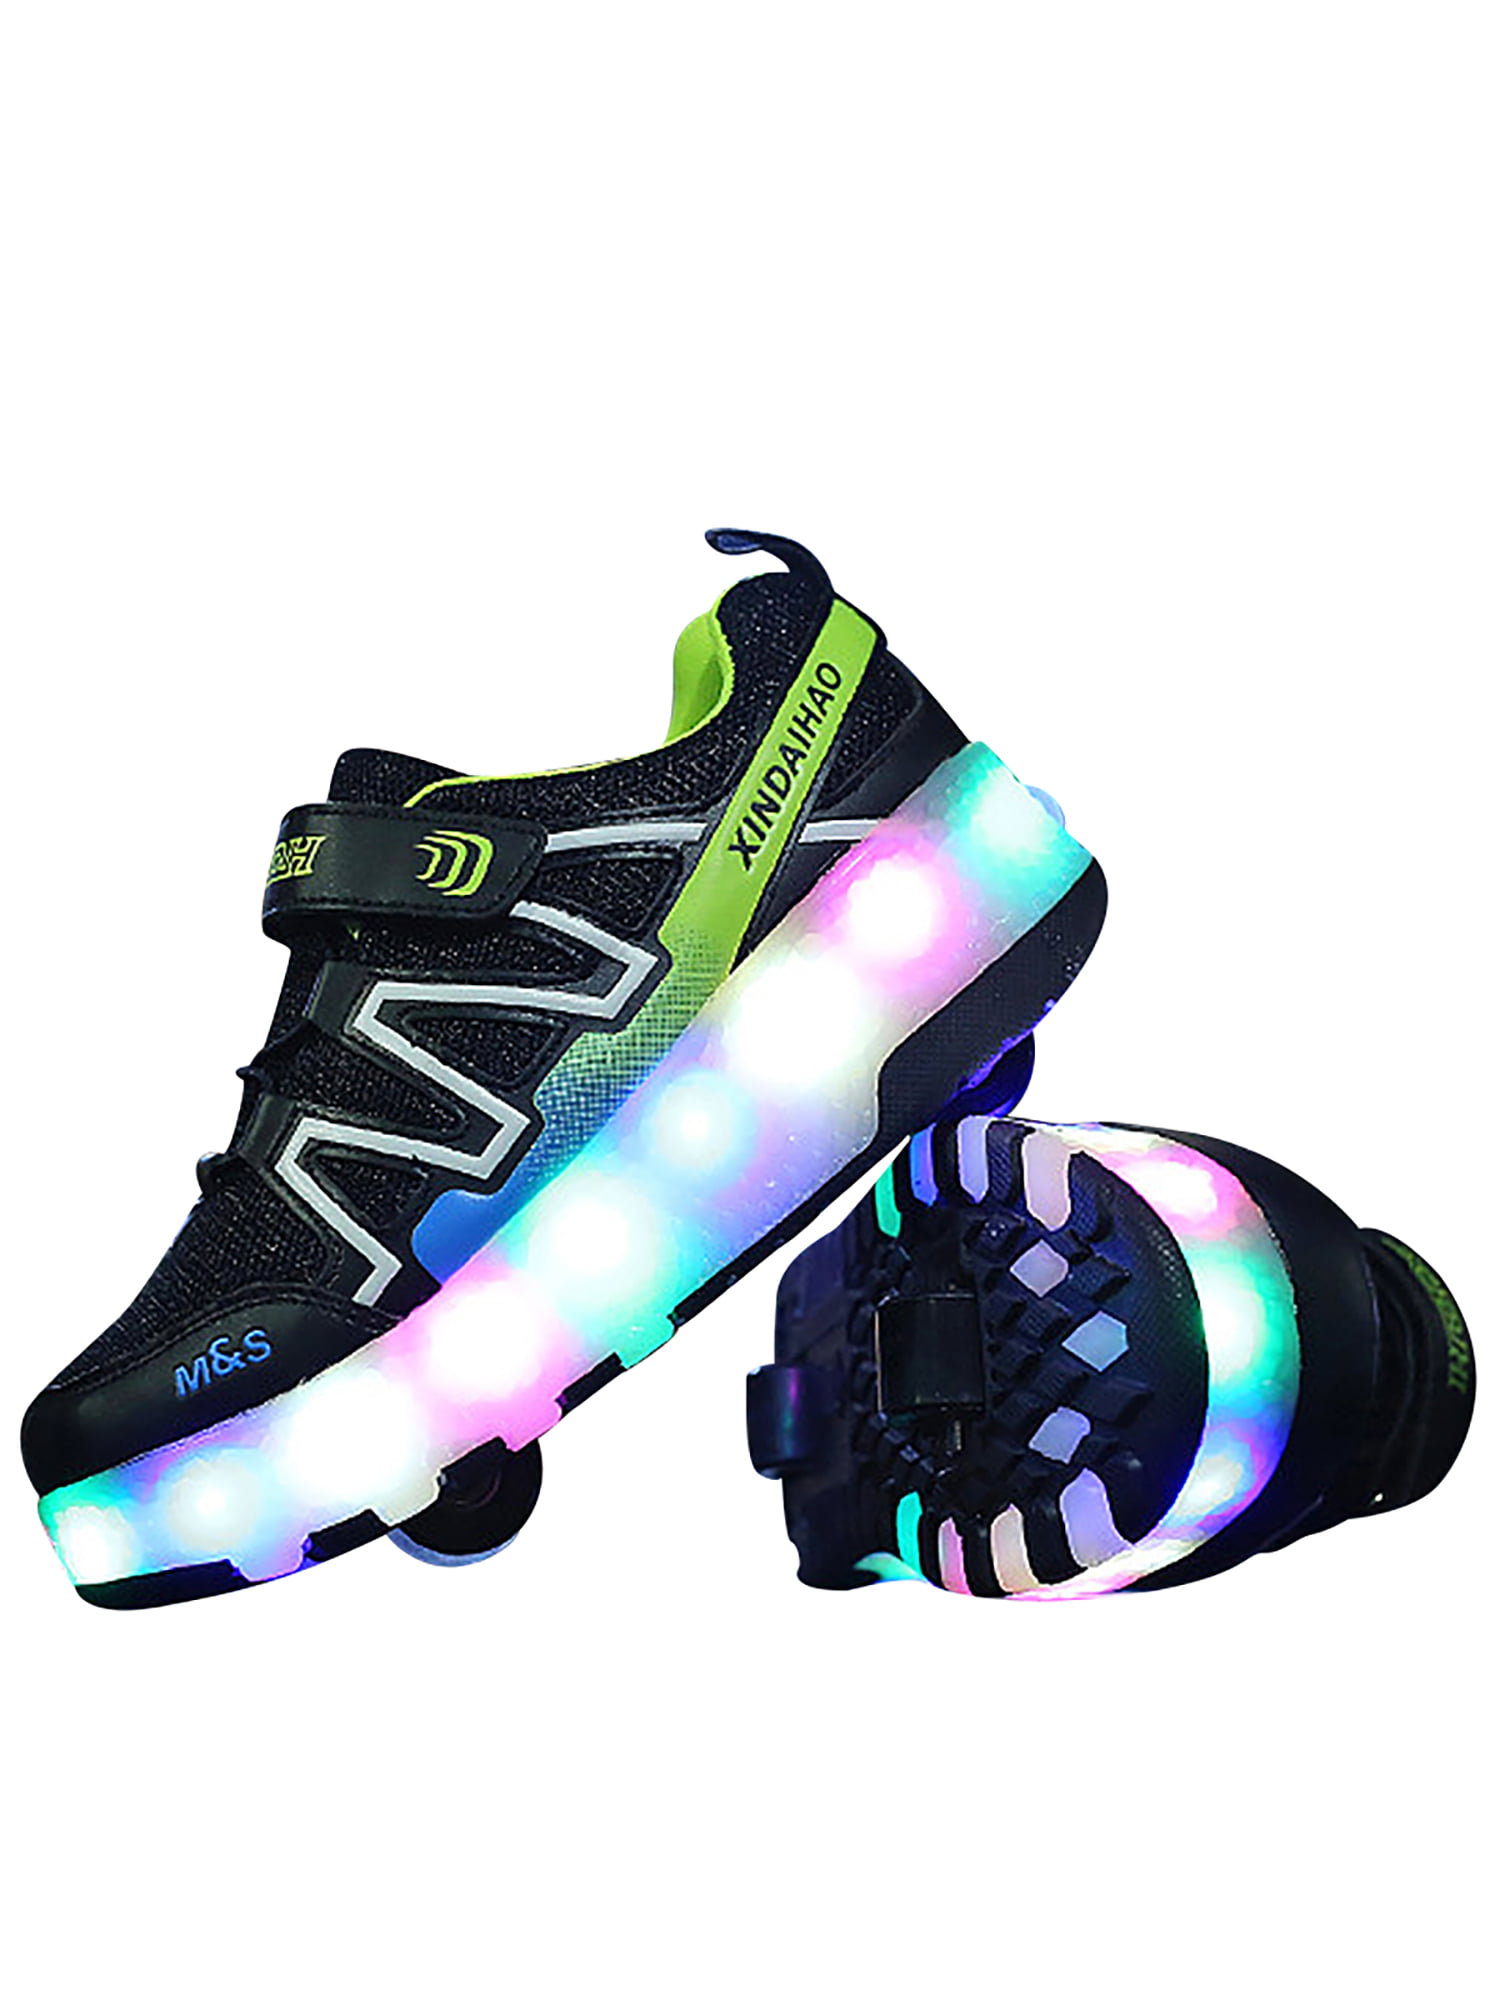 LED Heelys Wheels Boys & Girls Shoes Skates Kids Light Up Roller Skate Trainers 